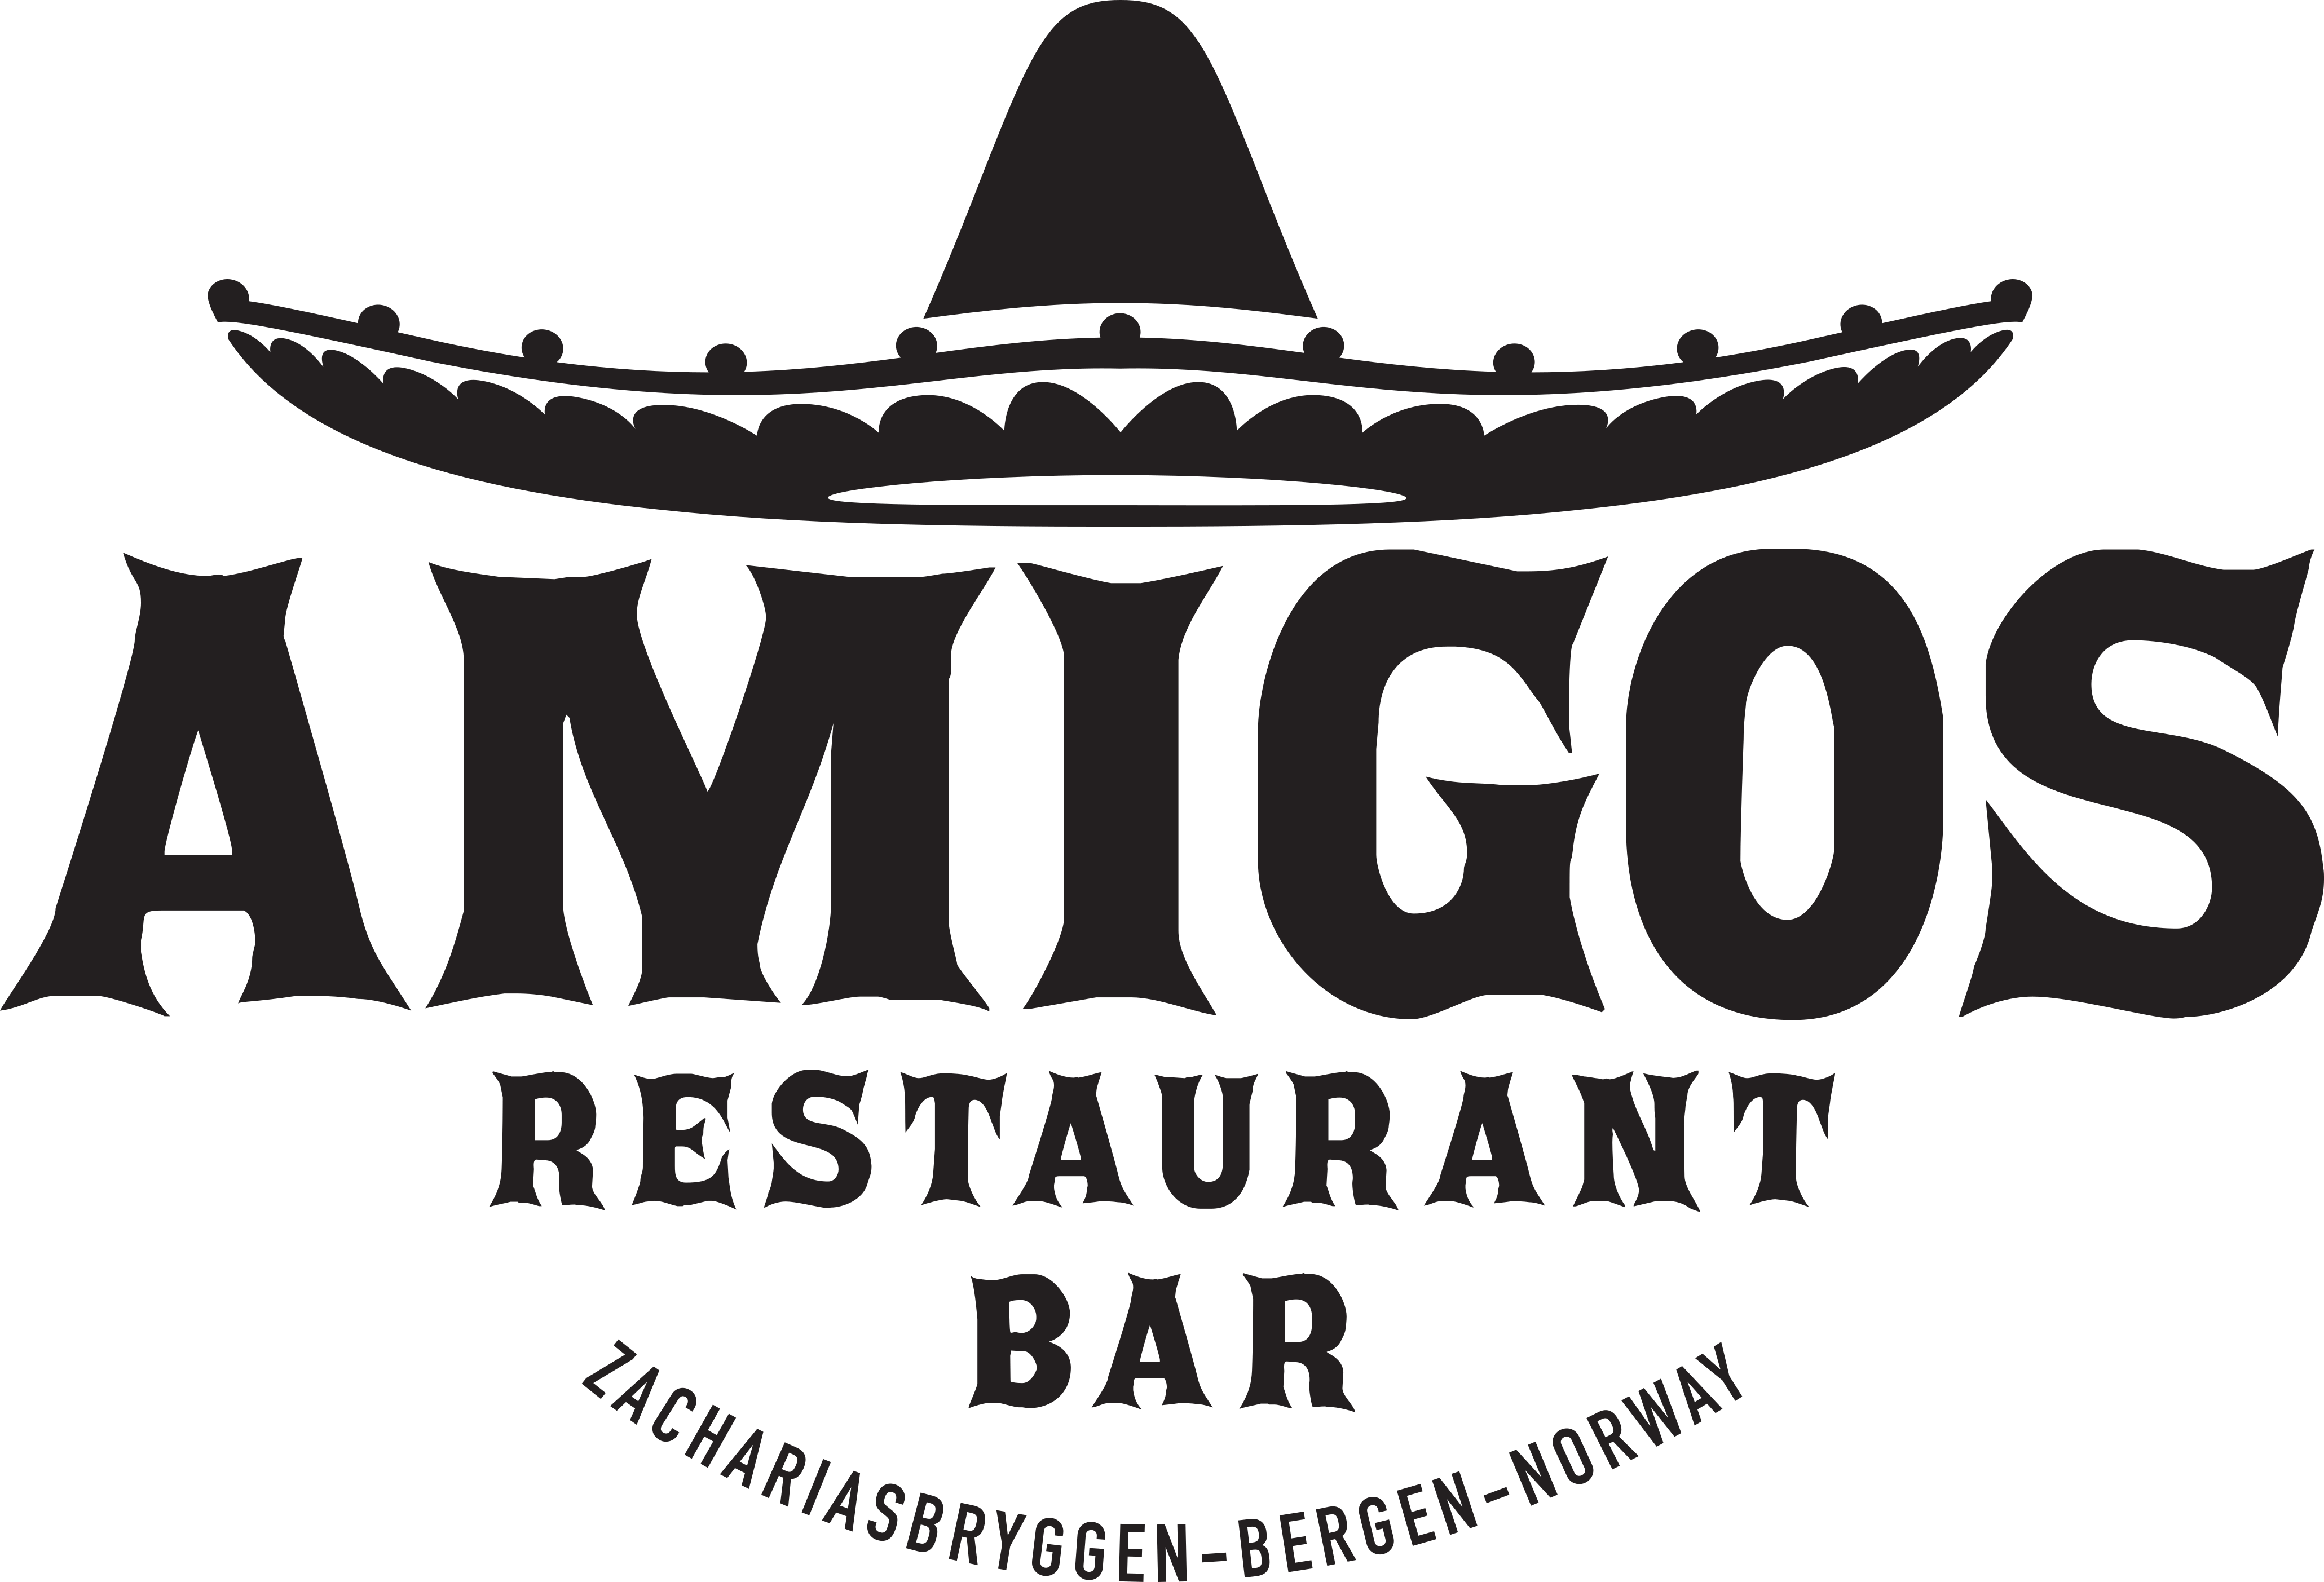 Meksikansk Restaurant i Bergen - Glutenfri Meny! logo